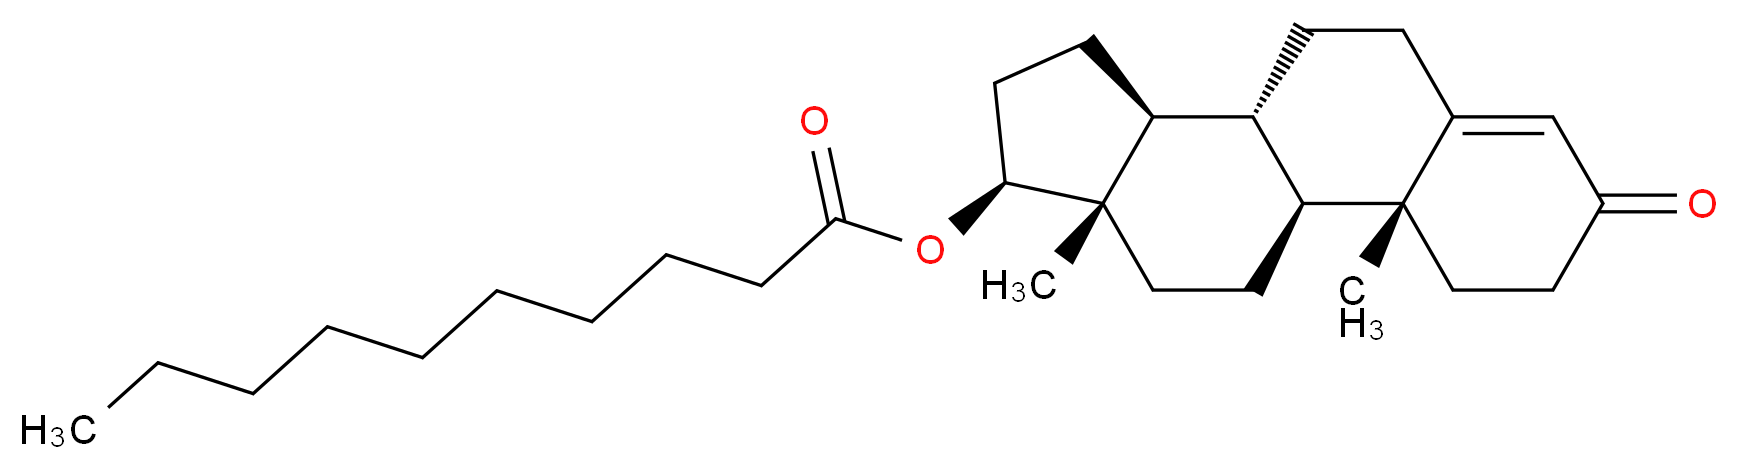 Testosterone decanoate_分子结构_CAS_5721-91-5)